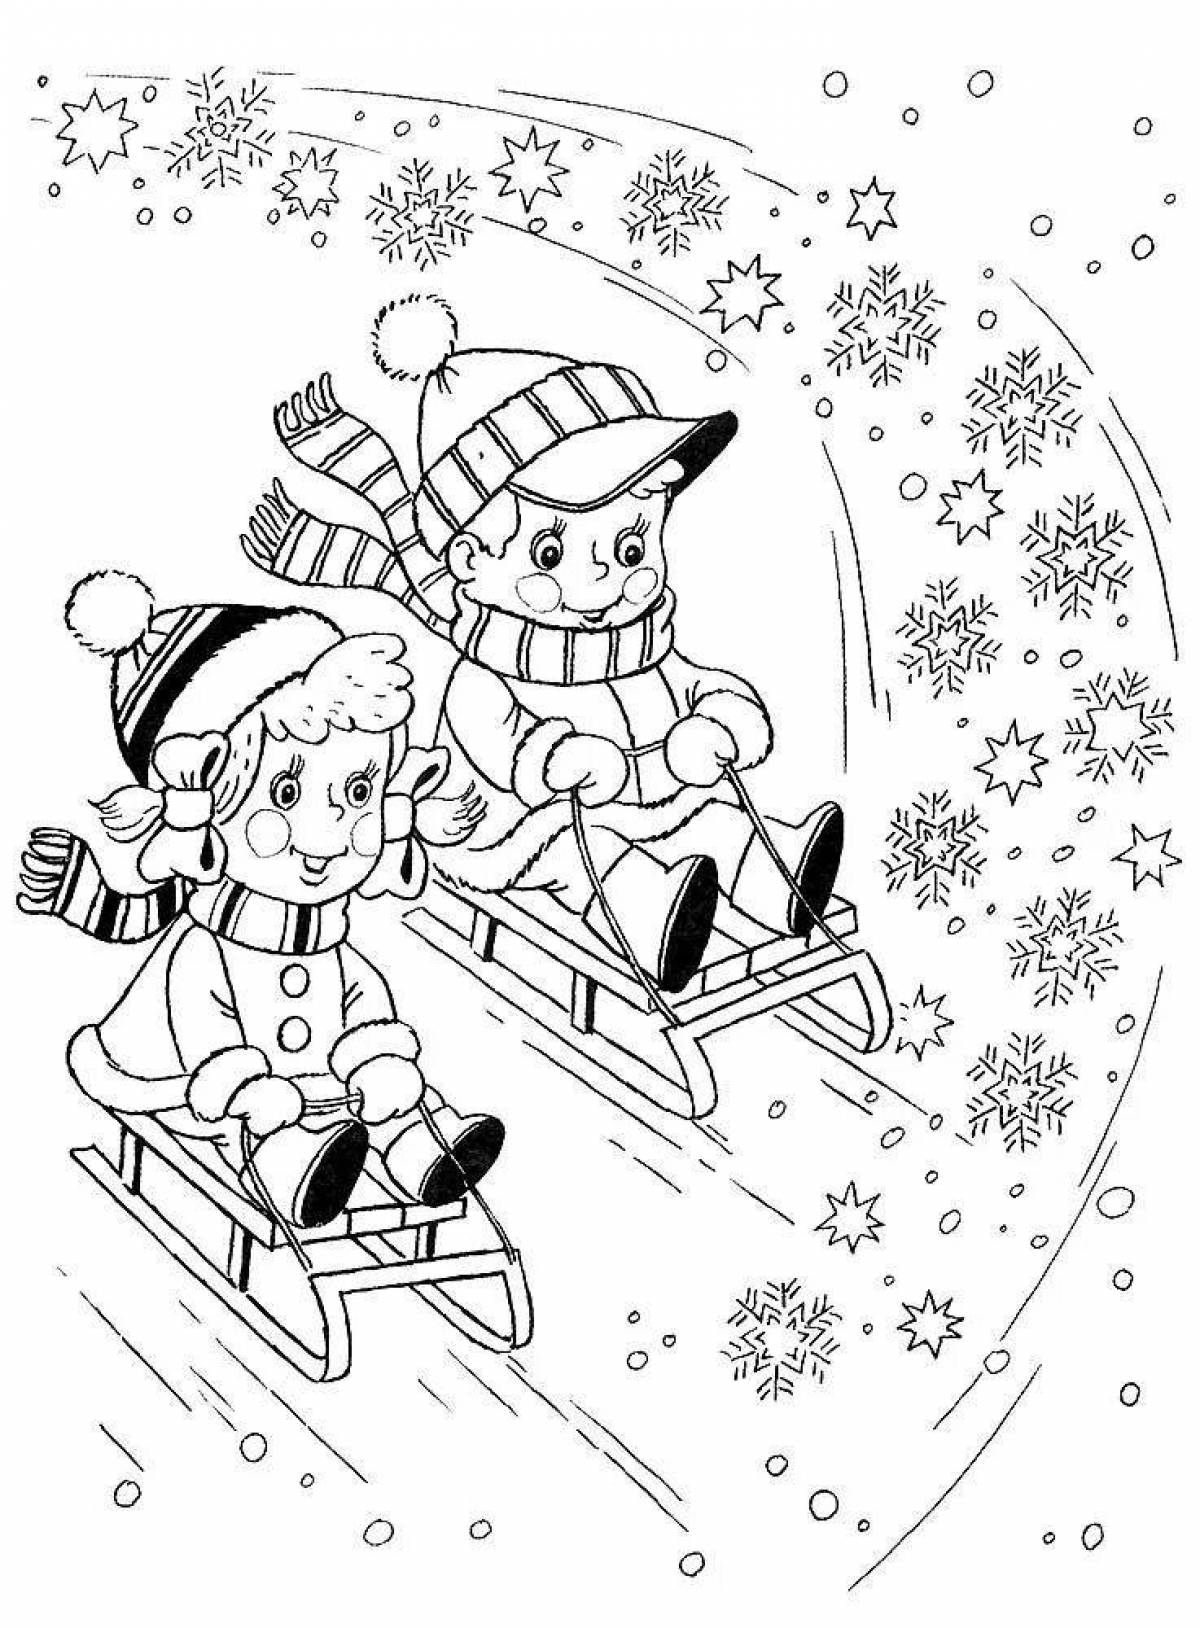 Joyful children's winter coloring book